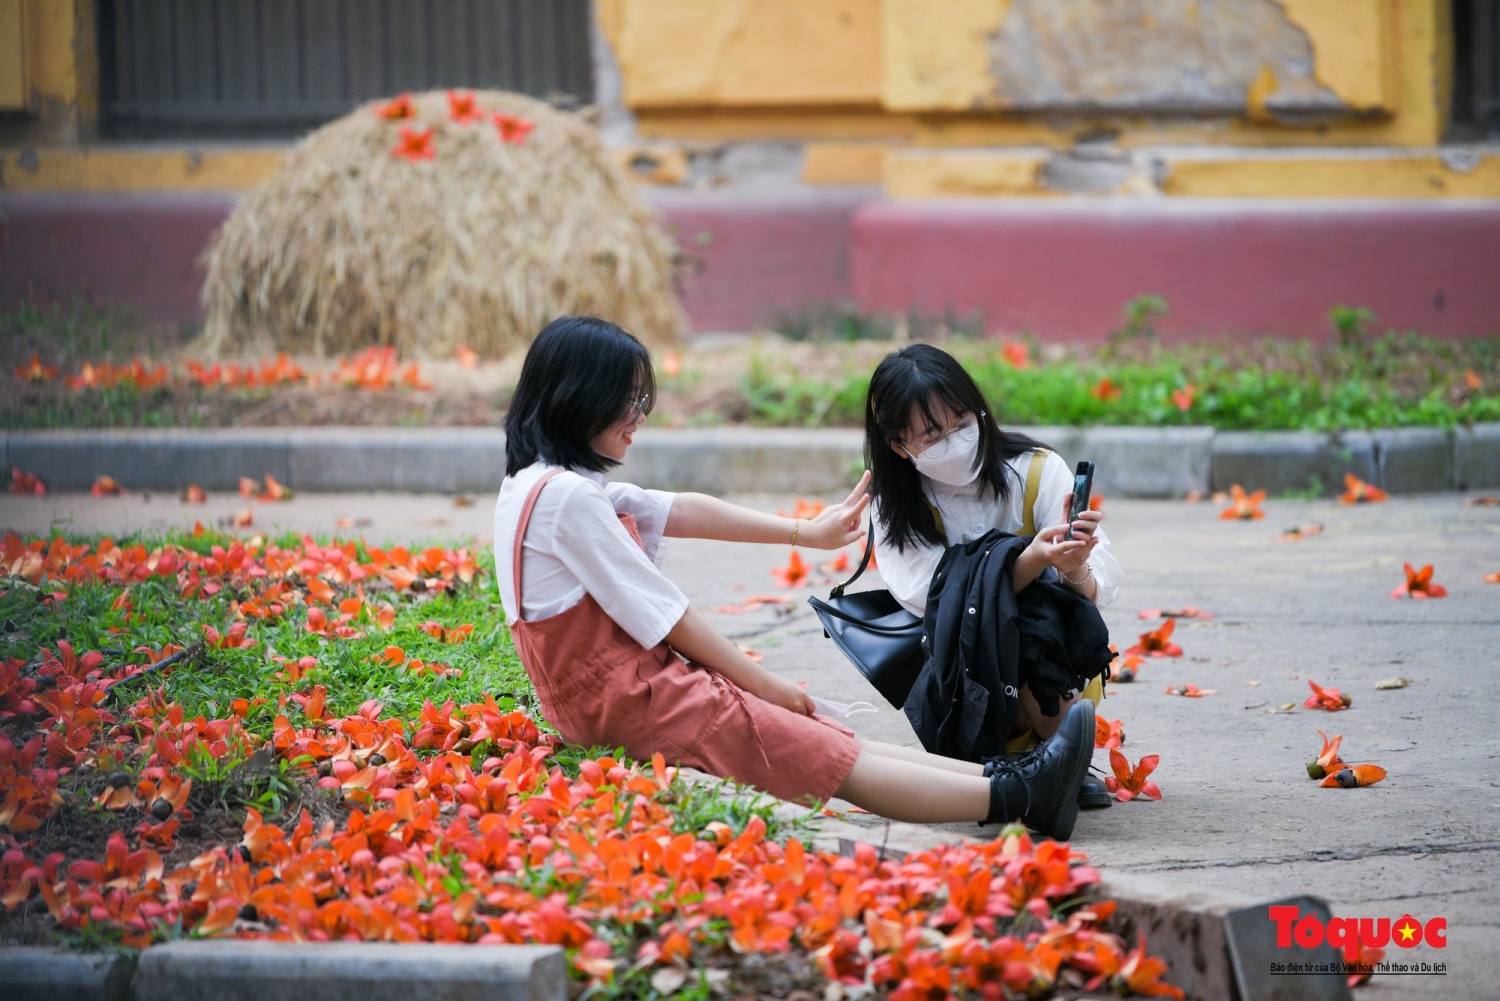 Bảo tàng Lịch sử Quốc gia rực rỡ trong sắc hoa gạo tháng 3